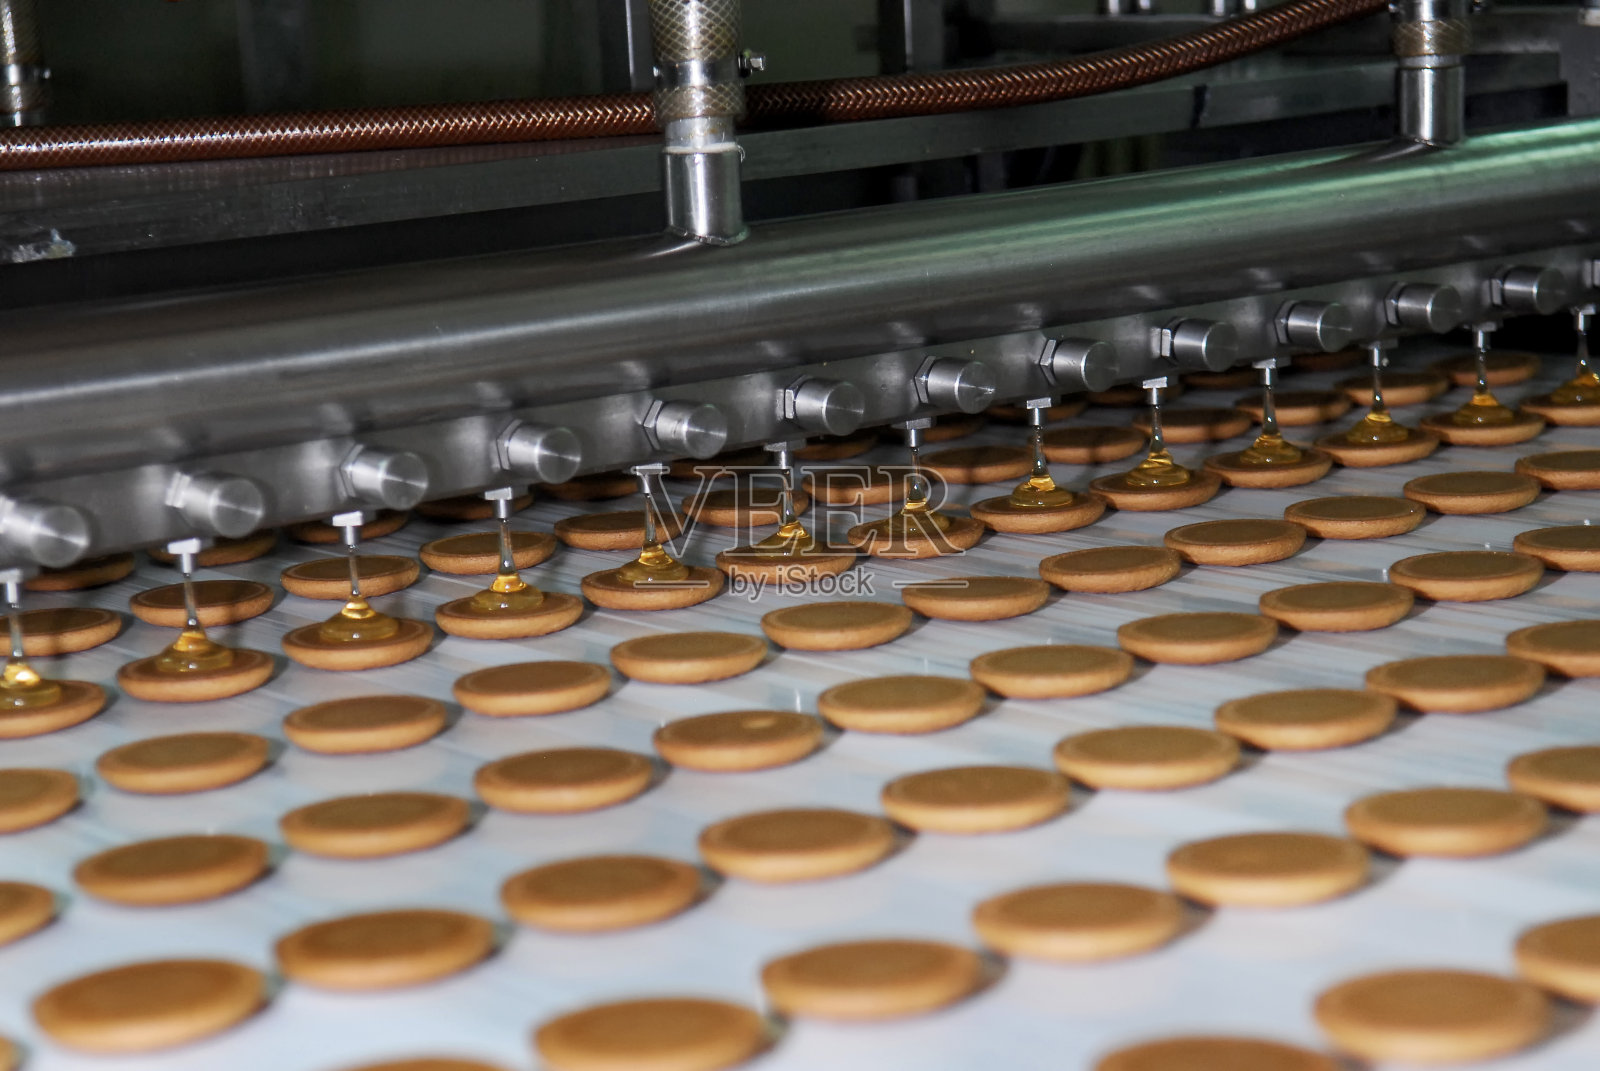 饼干和华夫饼生产流水线照片摄影